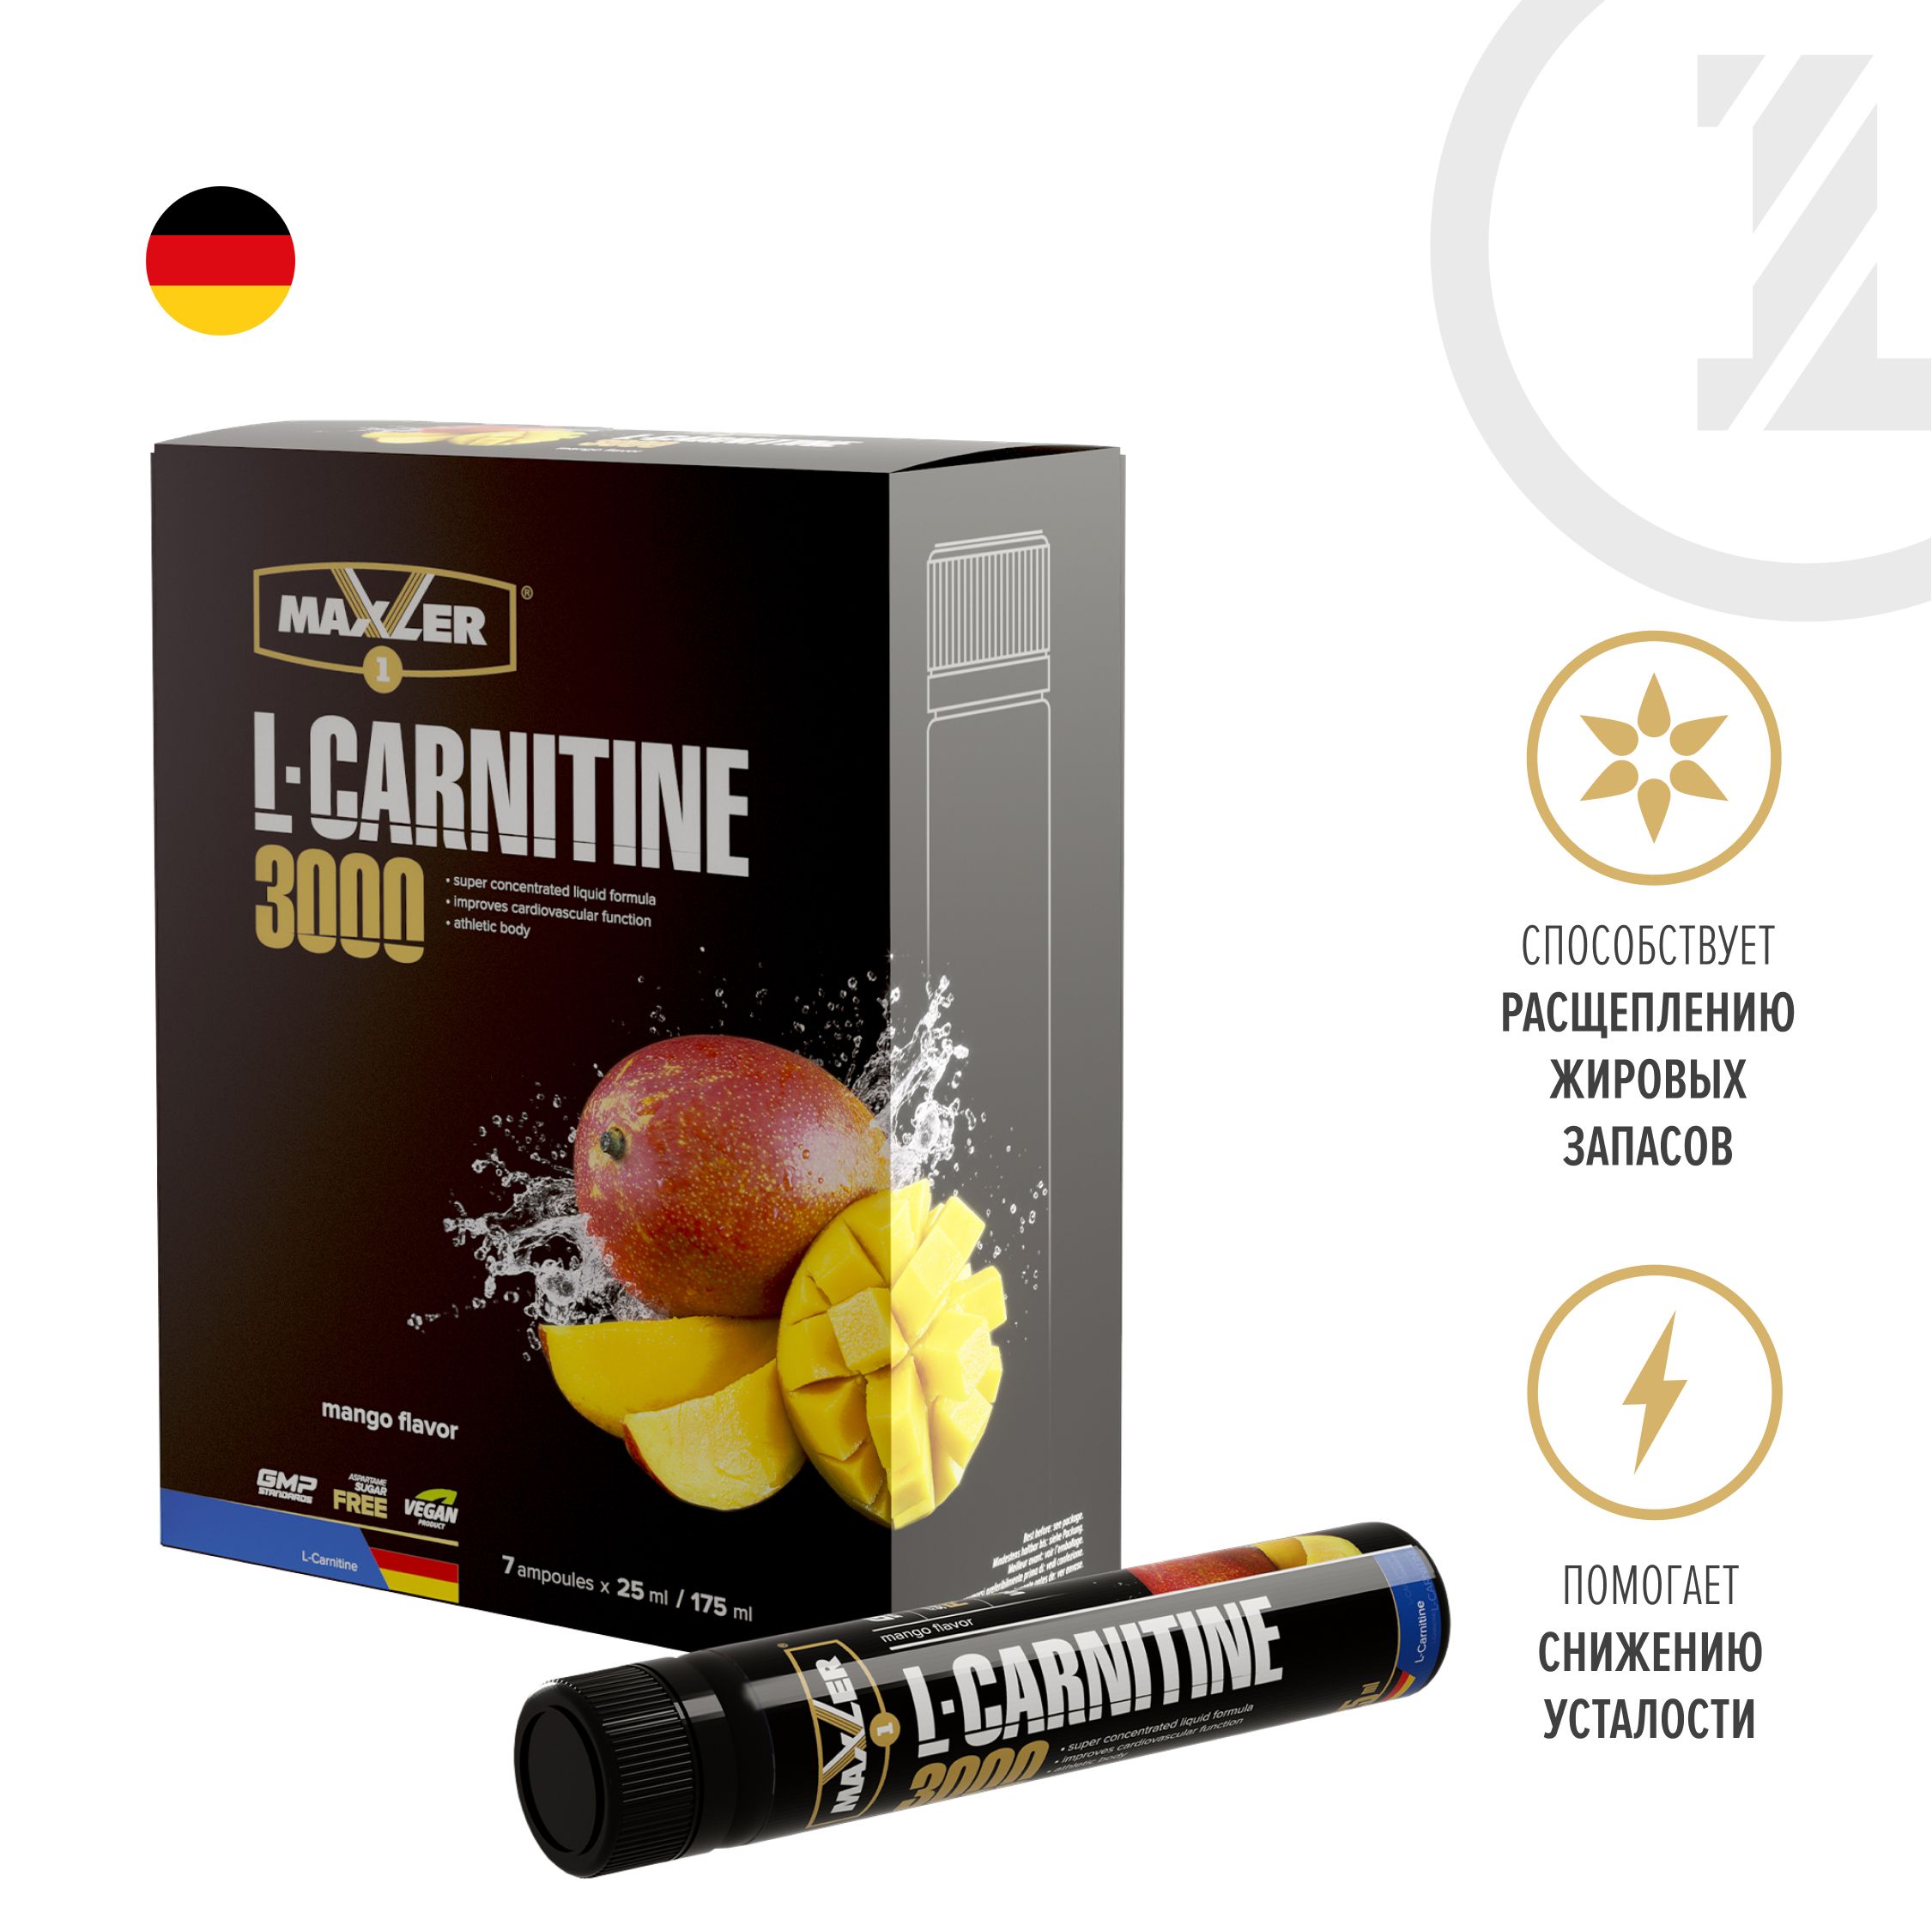 Л карнитин жидкий купить. L-Carnitine 3000 Maxler 25 мл манго. L-Carnitine 3000 (7*25 ml). L Carnitine 3000 Maxler жидкий. L Carnitine Maxler 3000 вишня.